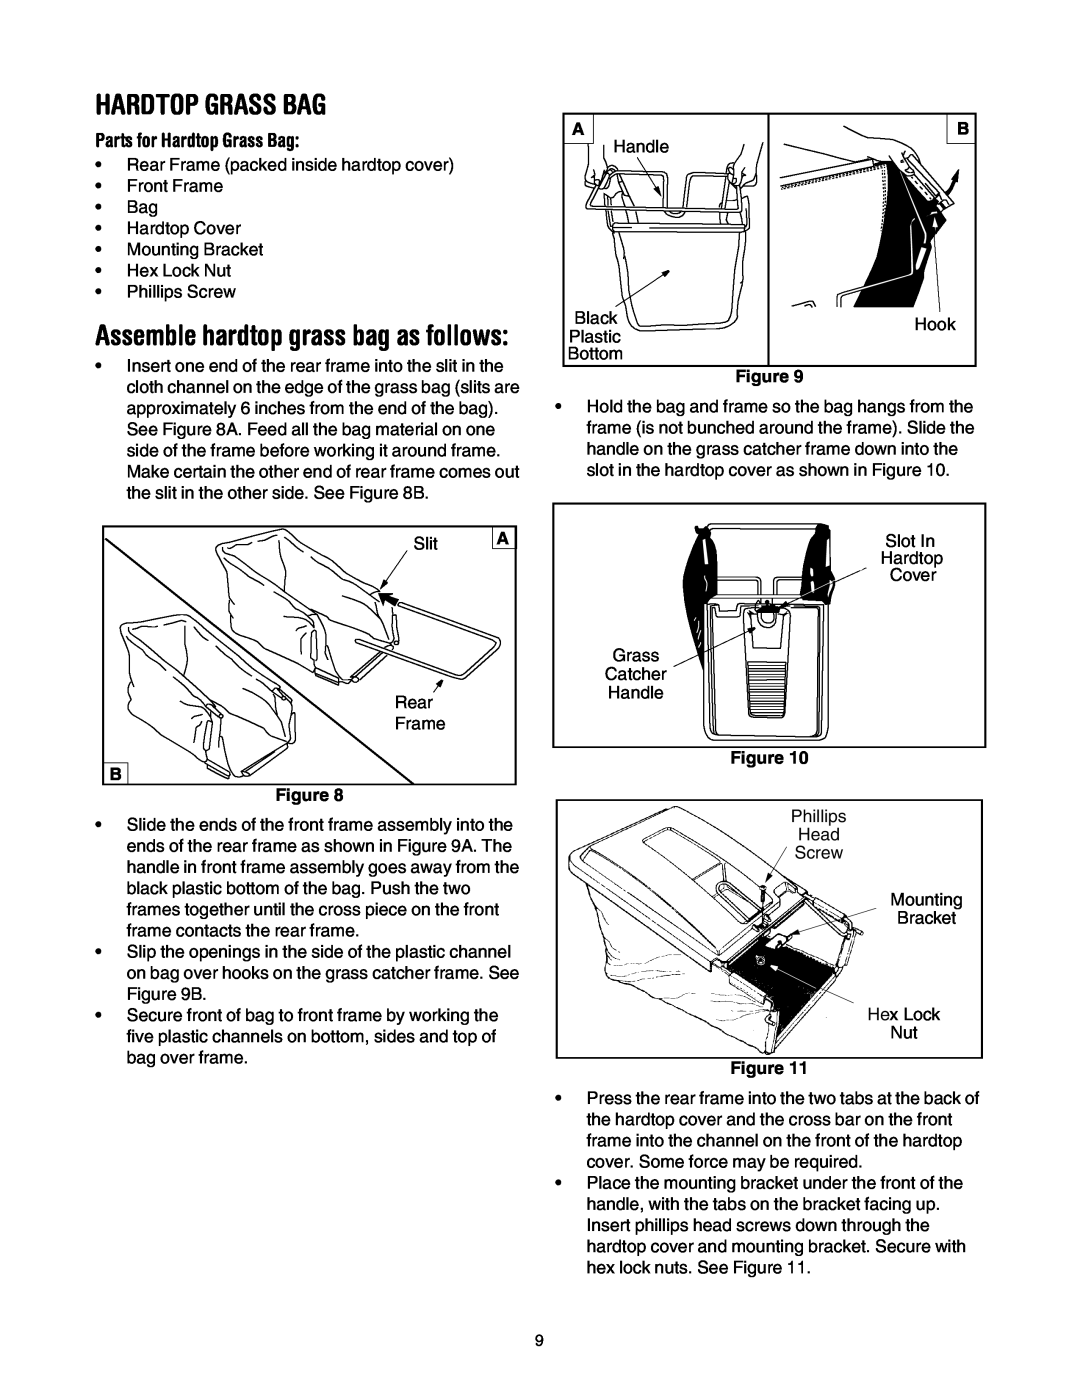 MTD 440 Thru E459 manual Parts for Hardtop Grass Bag, Assemble hardtop grass bag as follows 